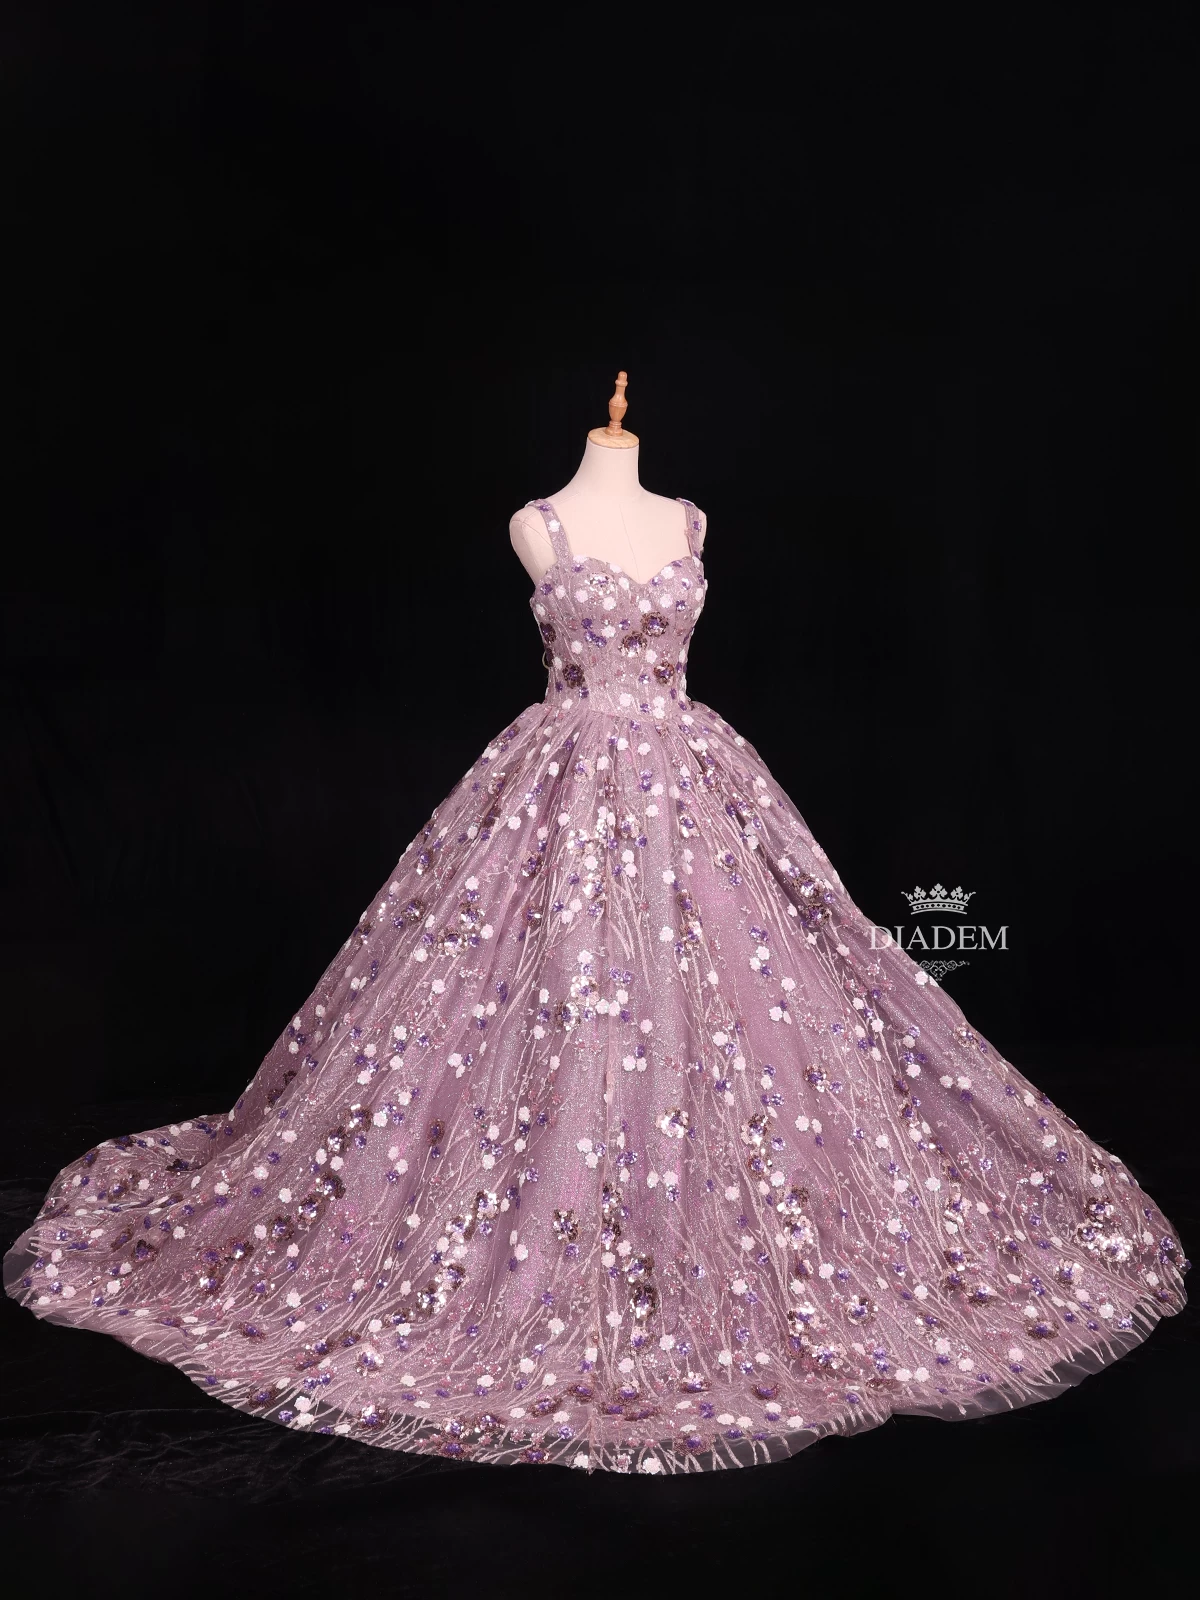 15 Luxury Wedding Gowns under $5000 - Perfete